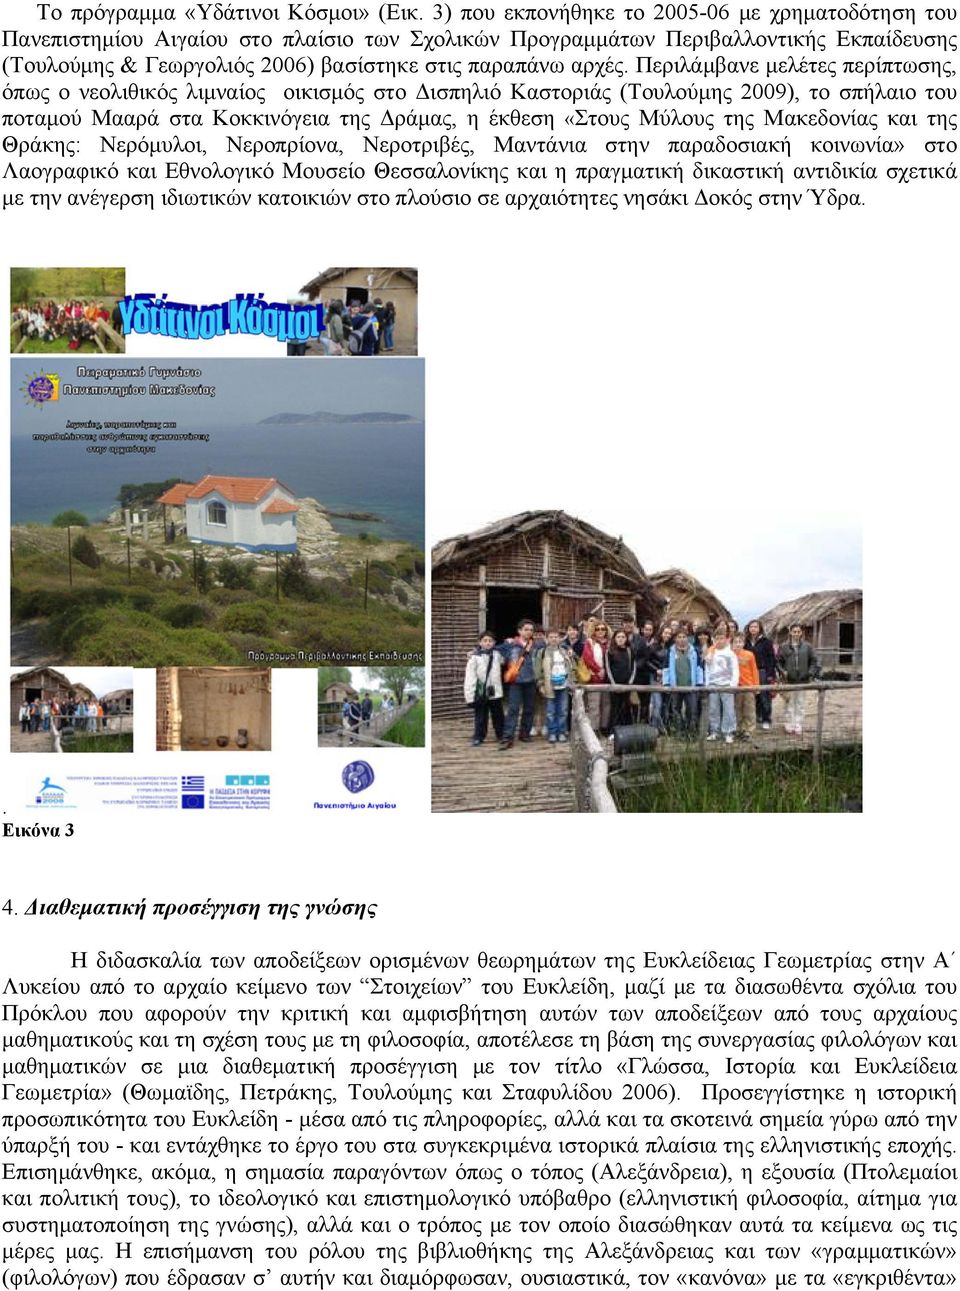 Περιλάμβανε μελέτες περίπτωσης, όπως ο νεολιθικός λιμναίος οικισμός στο Δισπηλιό Καστοριάς (Τουλούμης 2009), το σπήλαιο του ποταμού Μααρά στα Κοκκινόγεια της Δράμας, η έκθεση «Στους Μύλους της